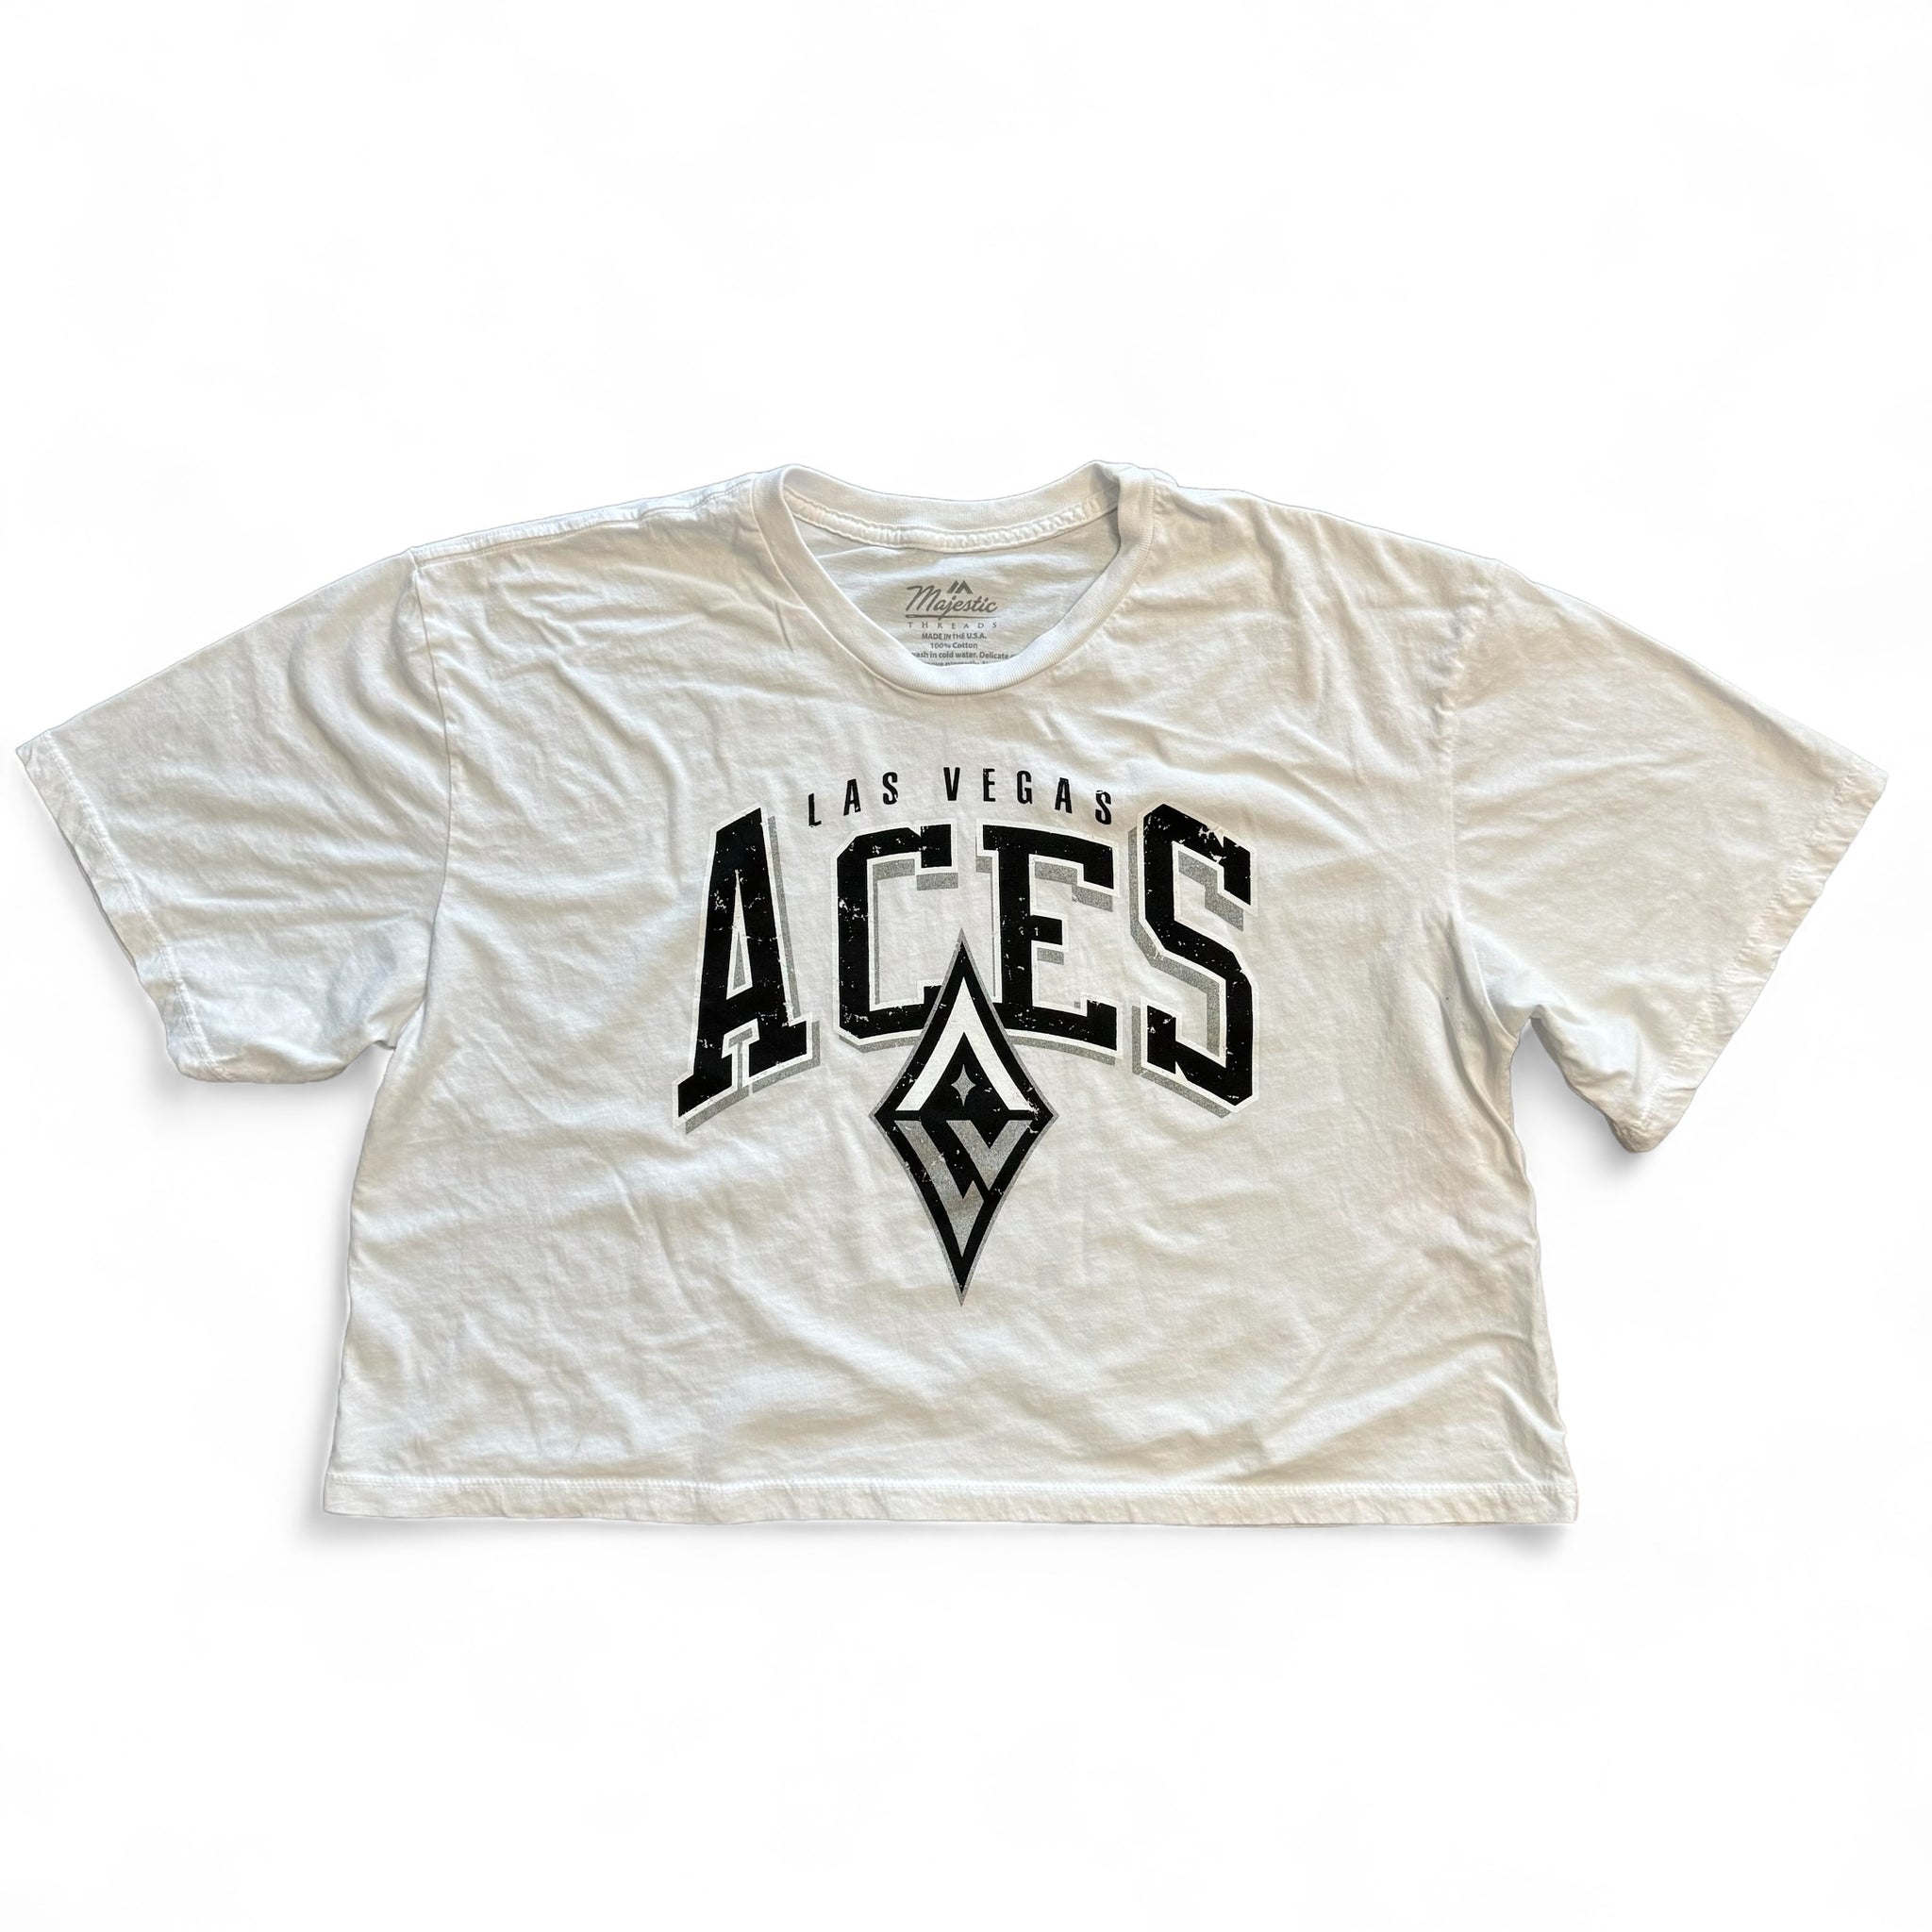 Las Vegas Aces Women's Burble Crop Top Shirt - White